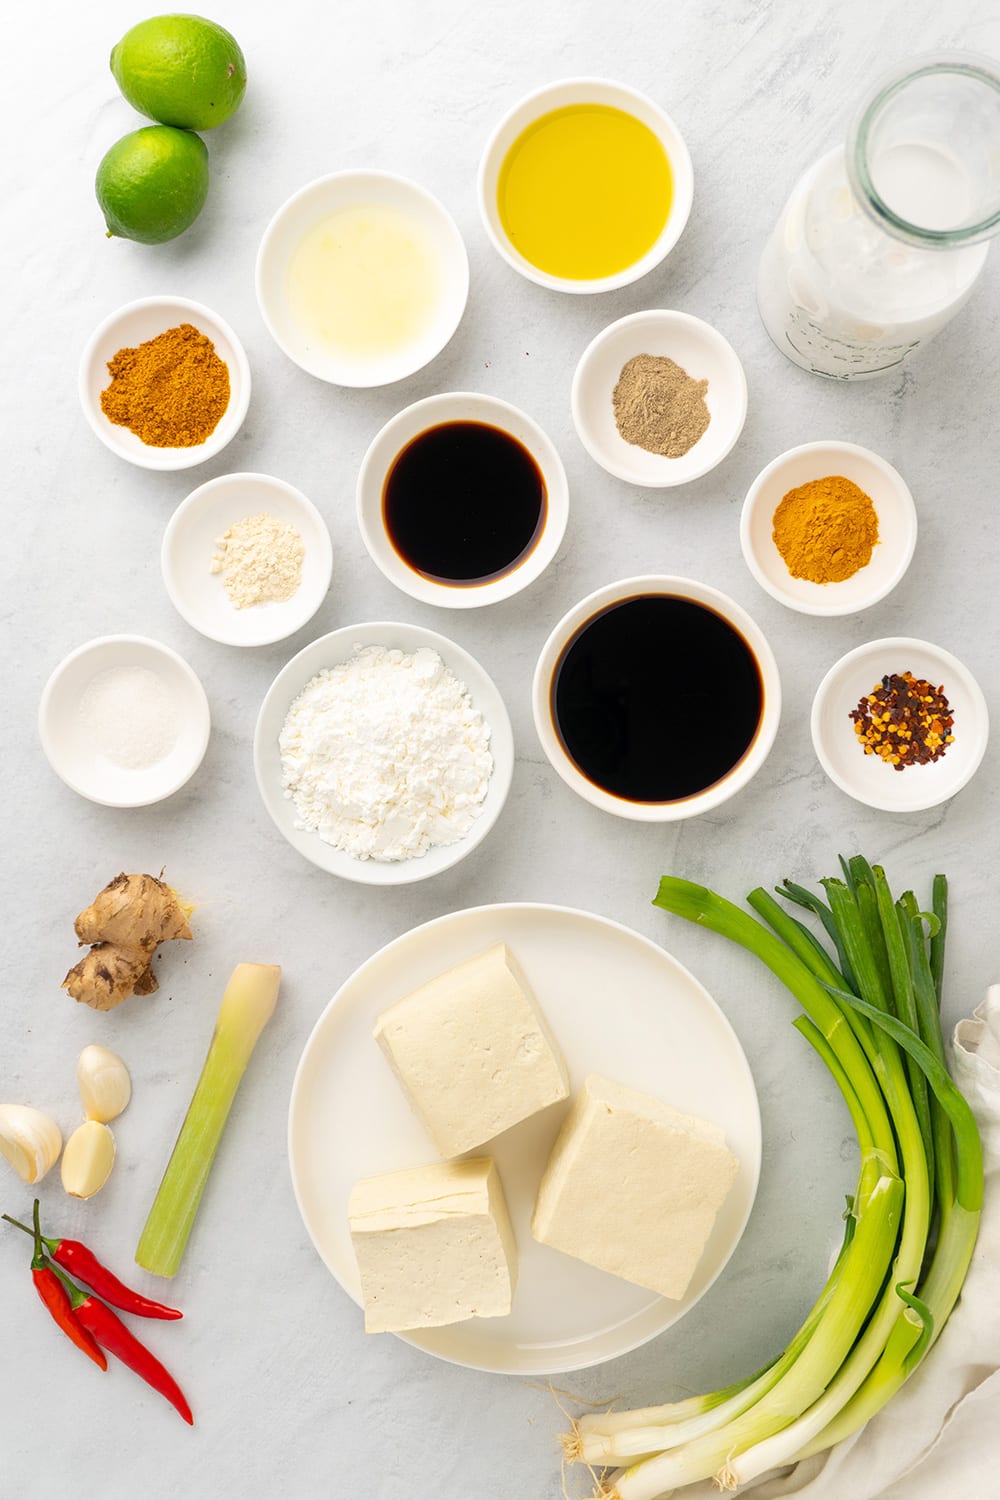 Ingredients for lemongrass tofu